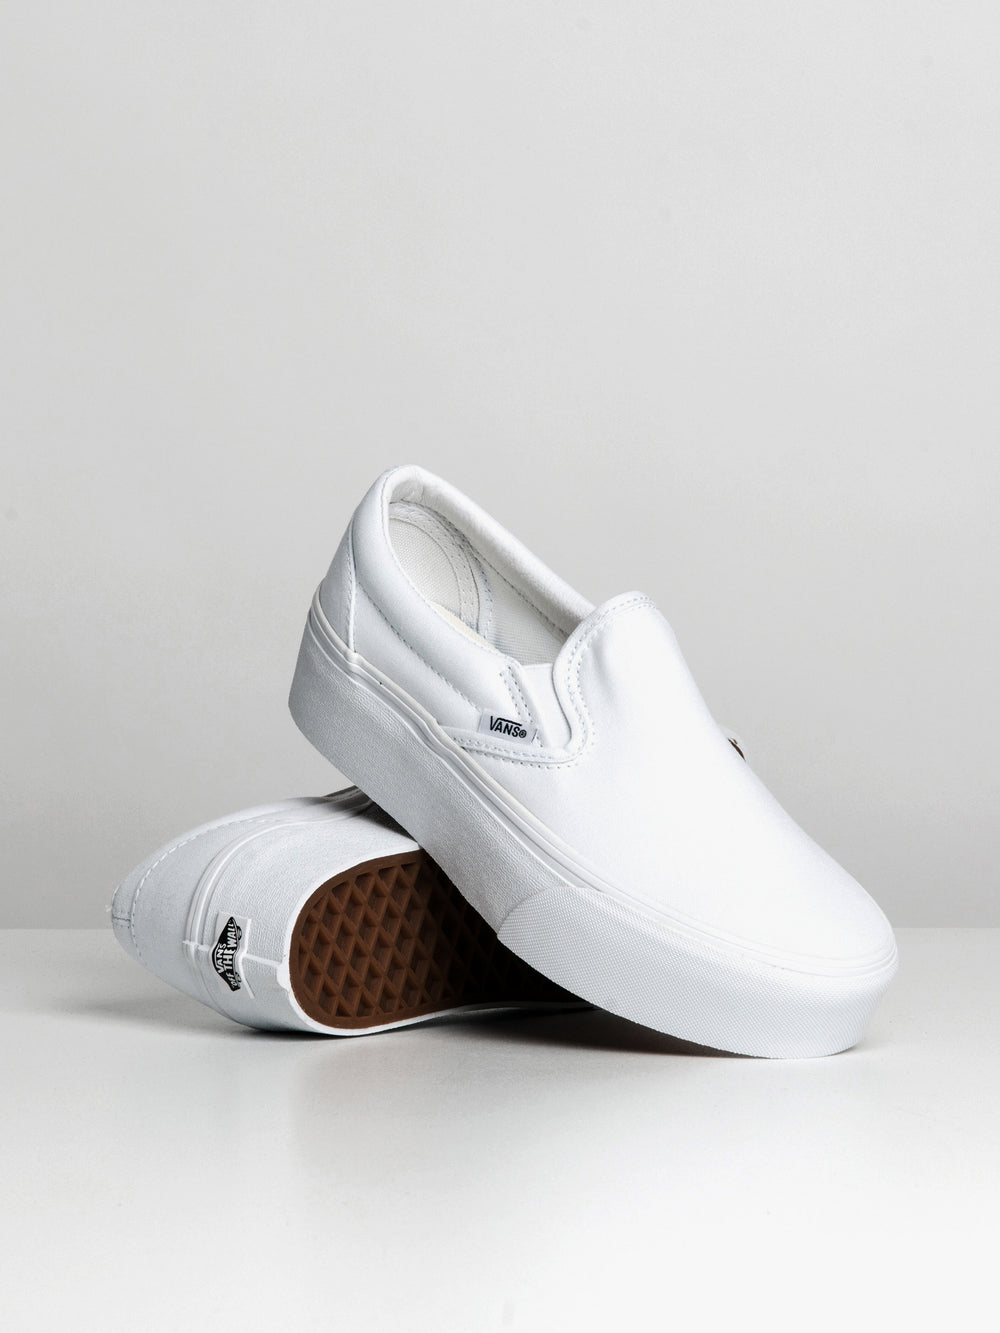 Vans Women's Classic Slip-On Stackform Sneaker - True White 10